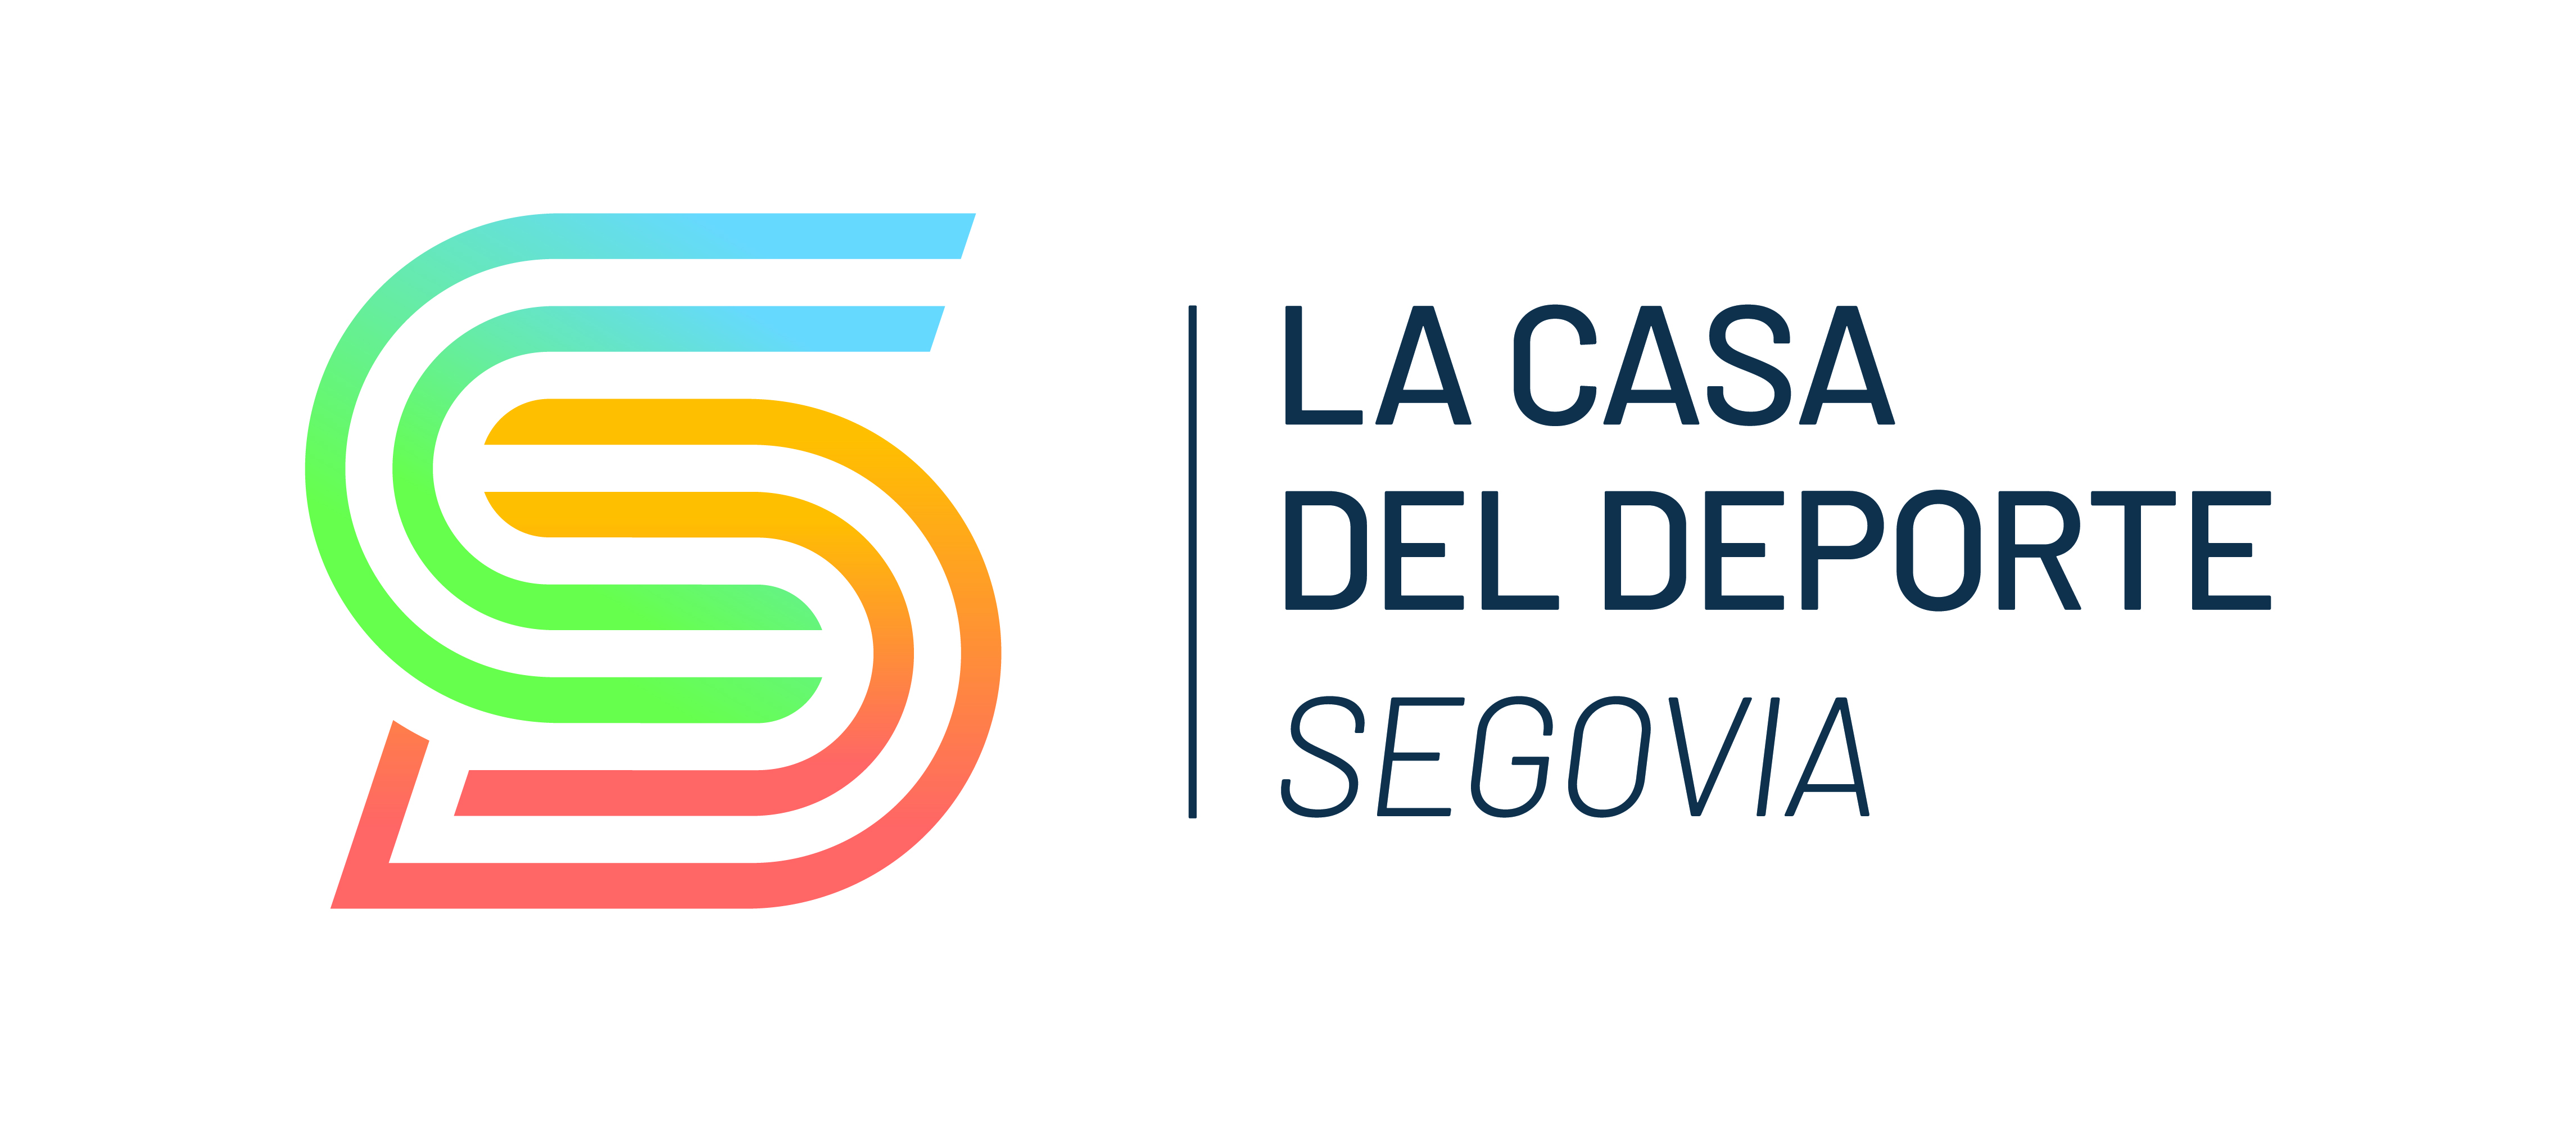 Abierto el plazo de solicitud para la cesión de espacios de la Casa del Deporte de Segovia 2022